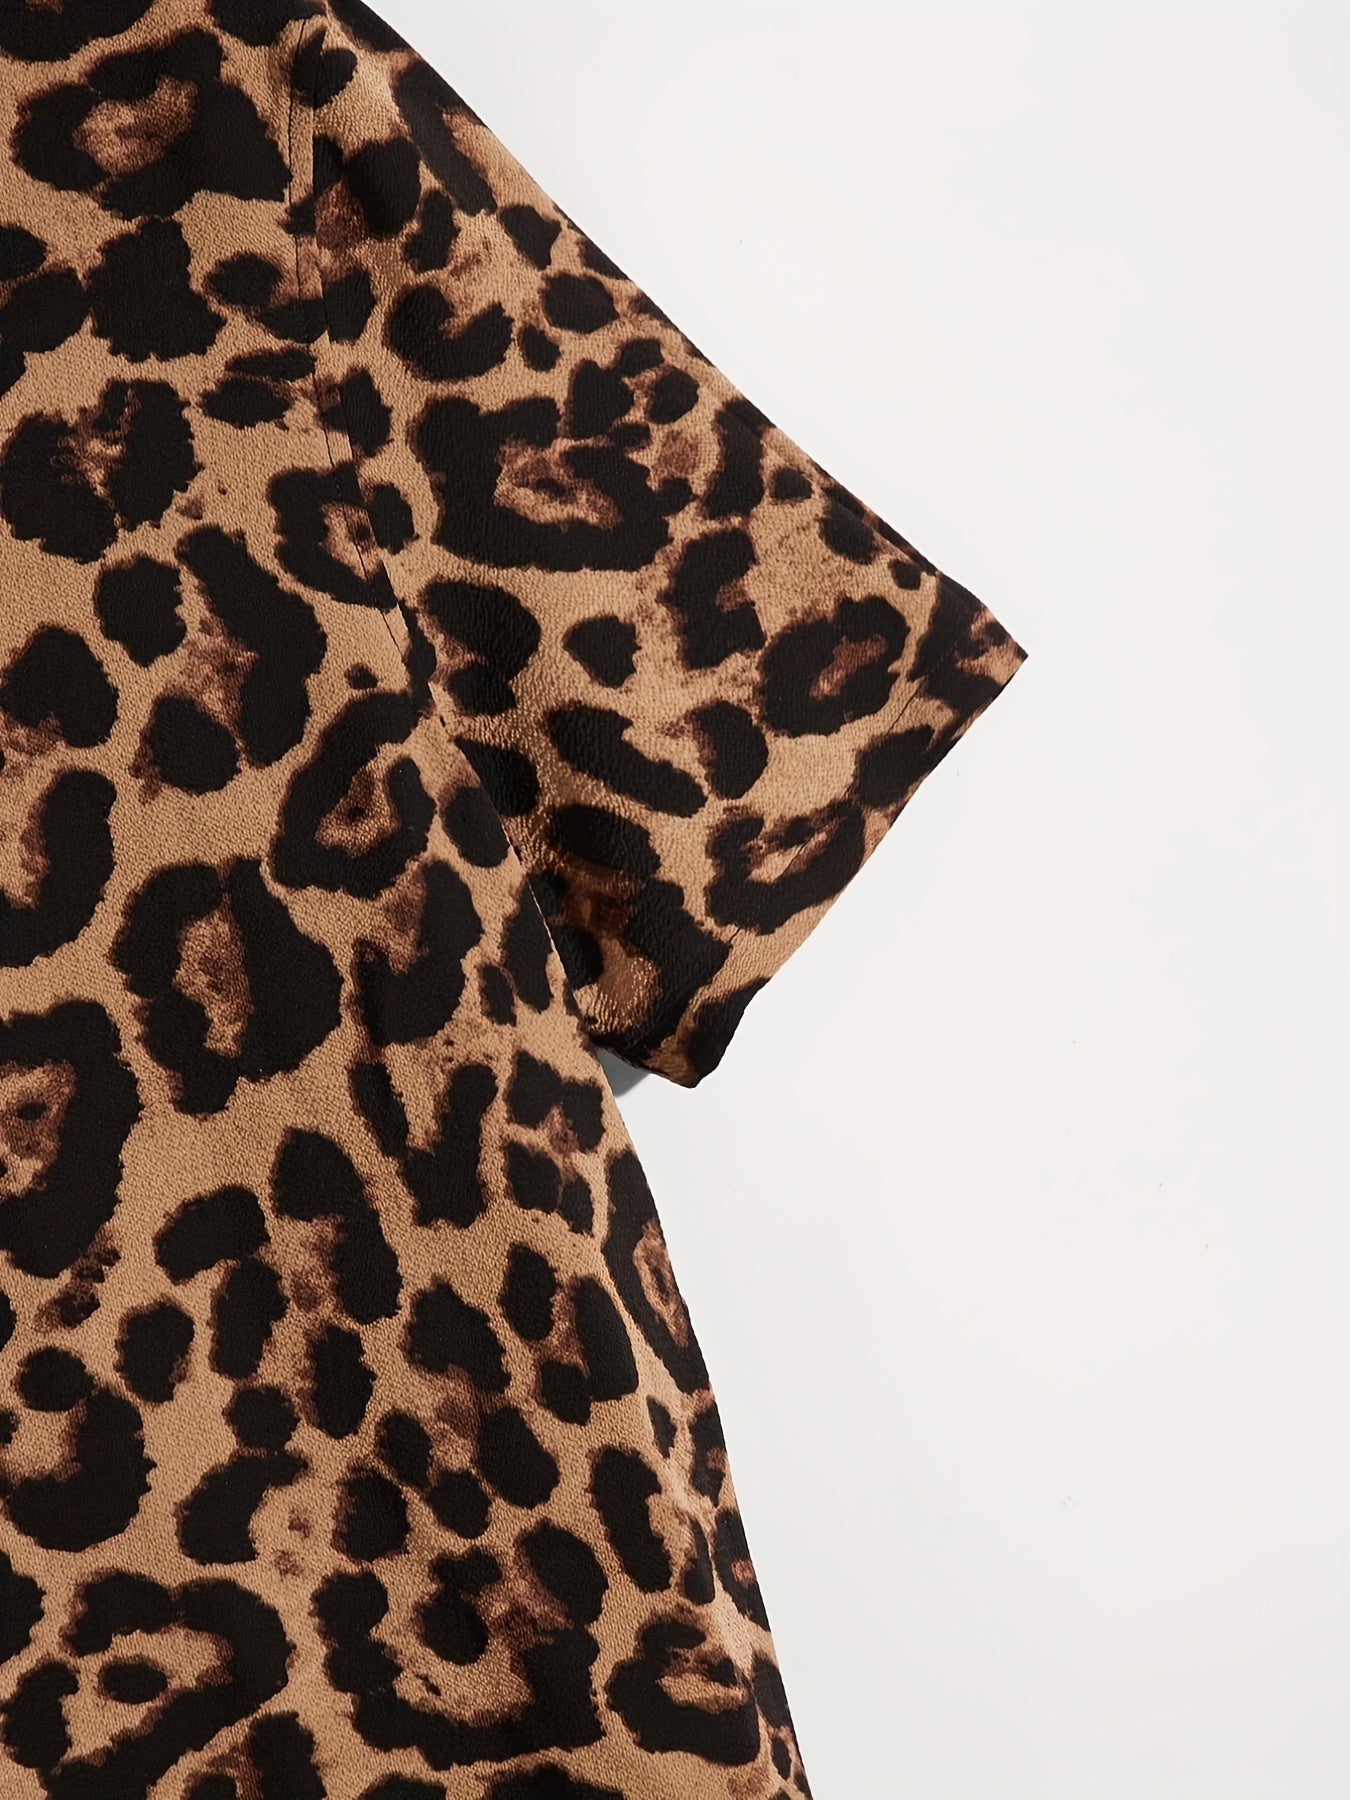 Leopard Button-Down Shirt